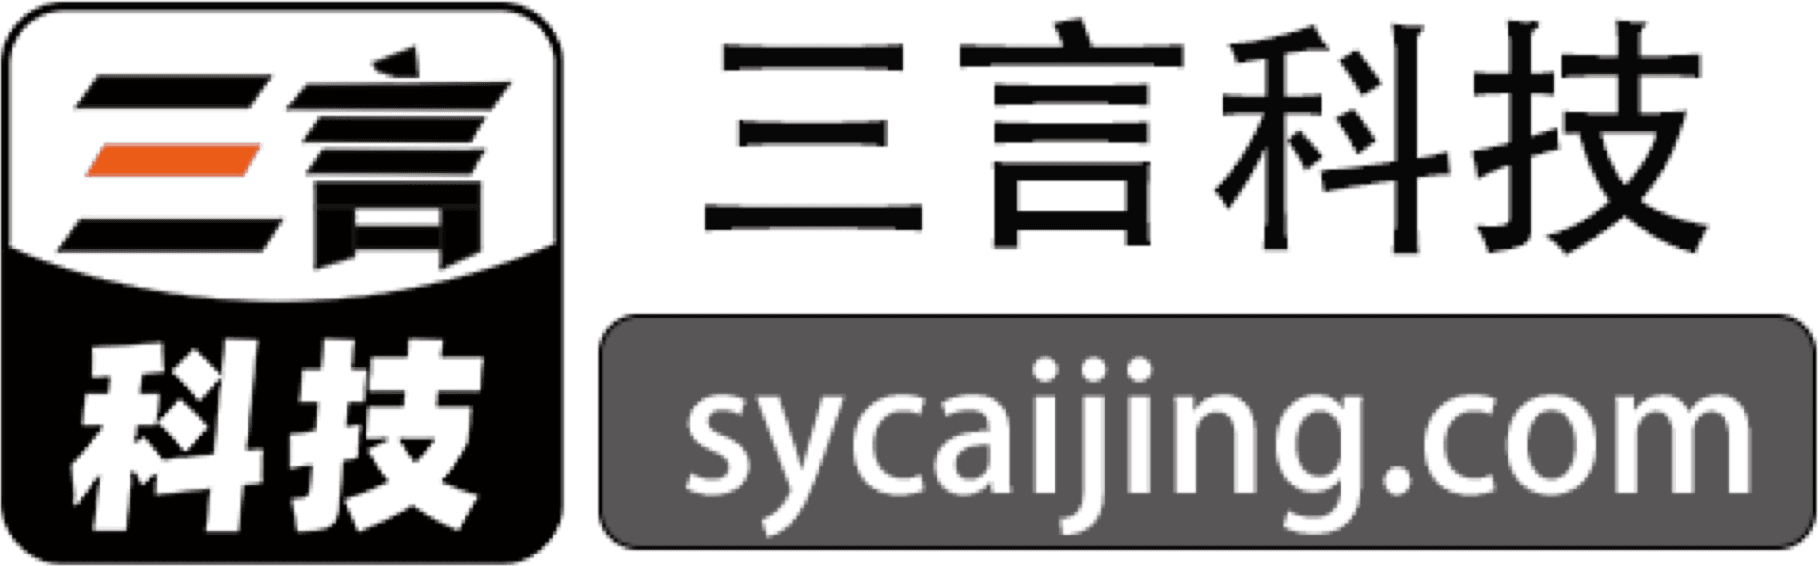 Sycaijing.com